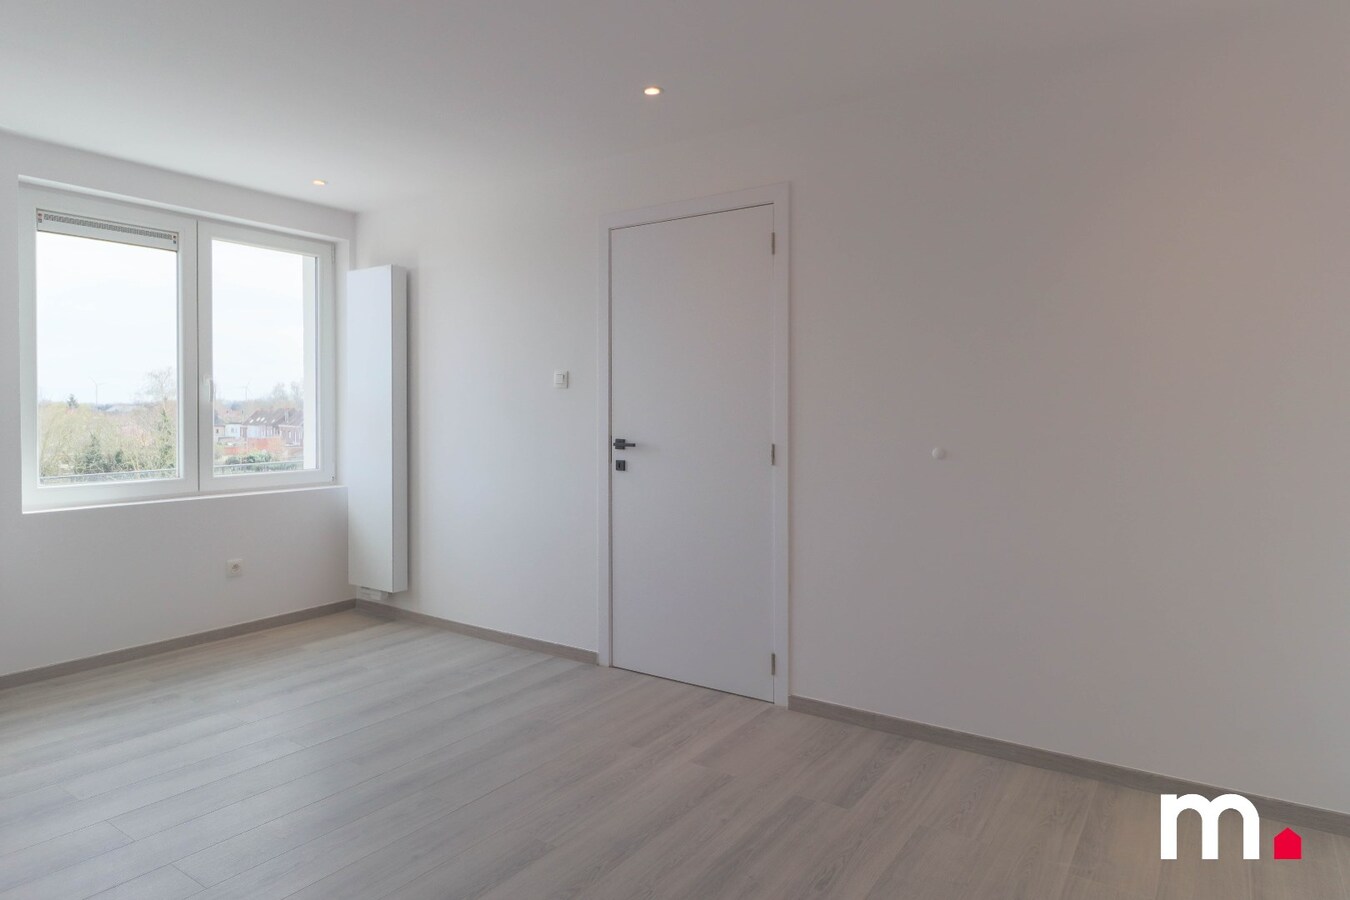 Goed gelegen volledig gerenoveerd duplex appartement met 2 slaapkamers te Harelbeke! 